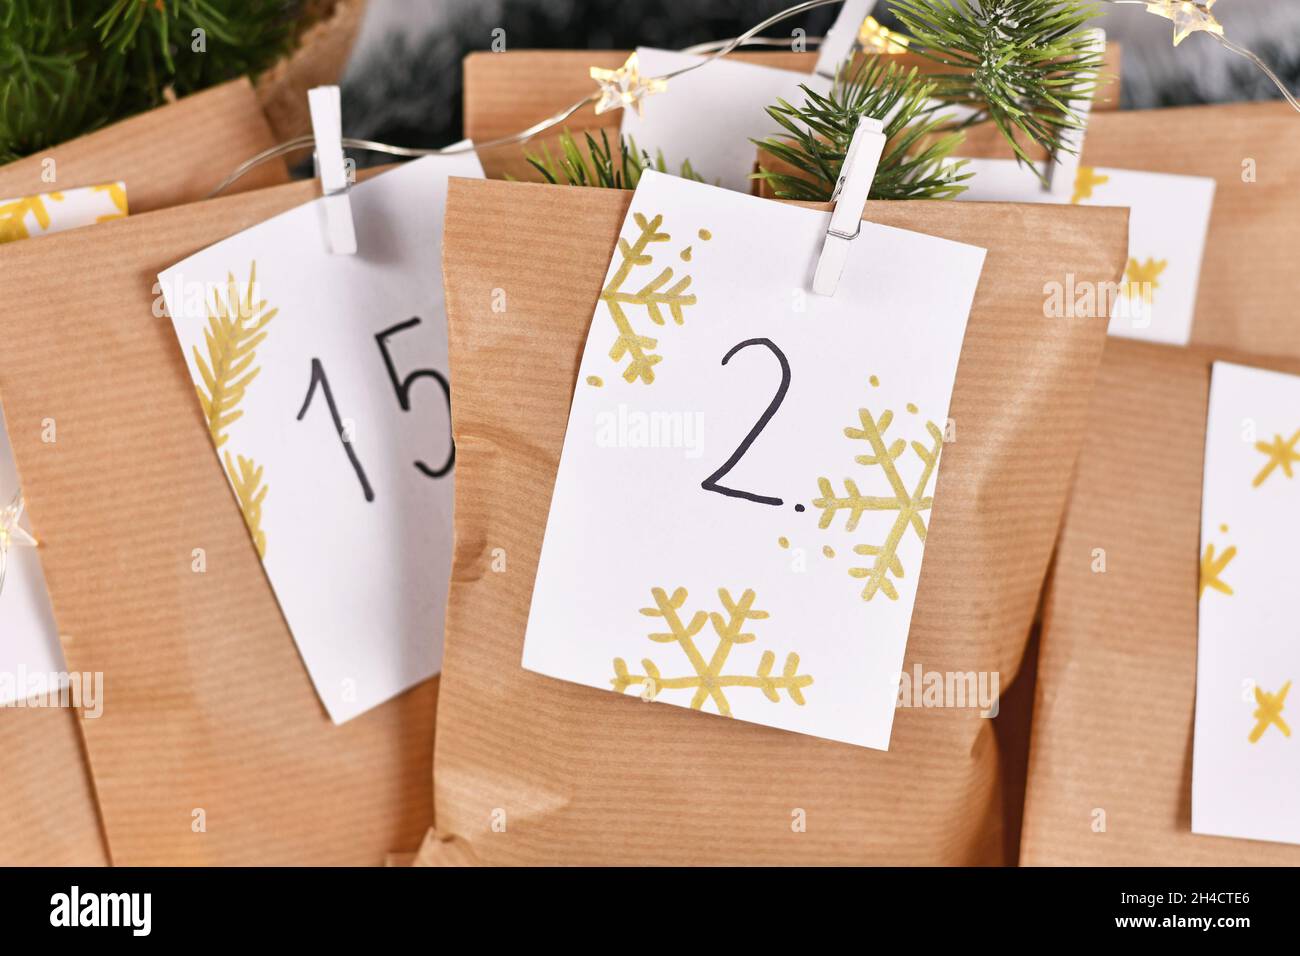 Calendario dell'Avvento fatto in casa da borse di carta artigianale con numeri scritti a mano Foto Stock